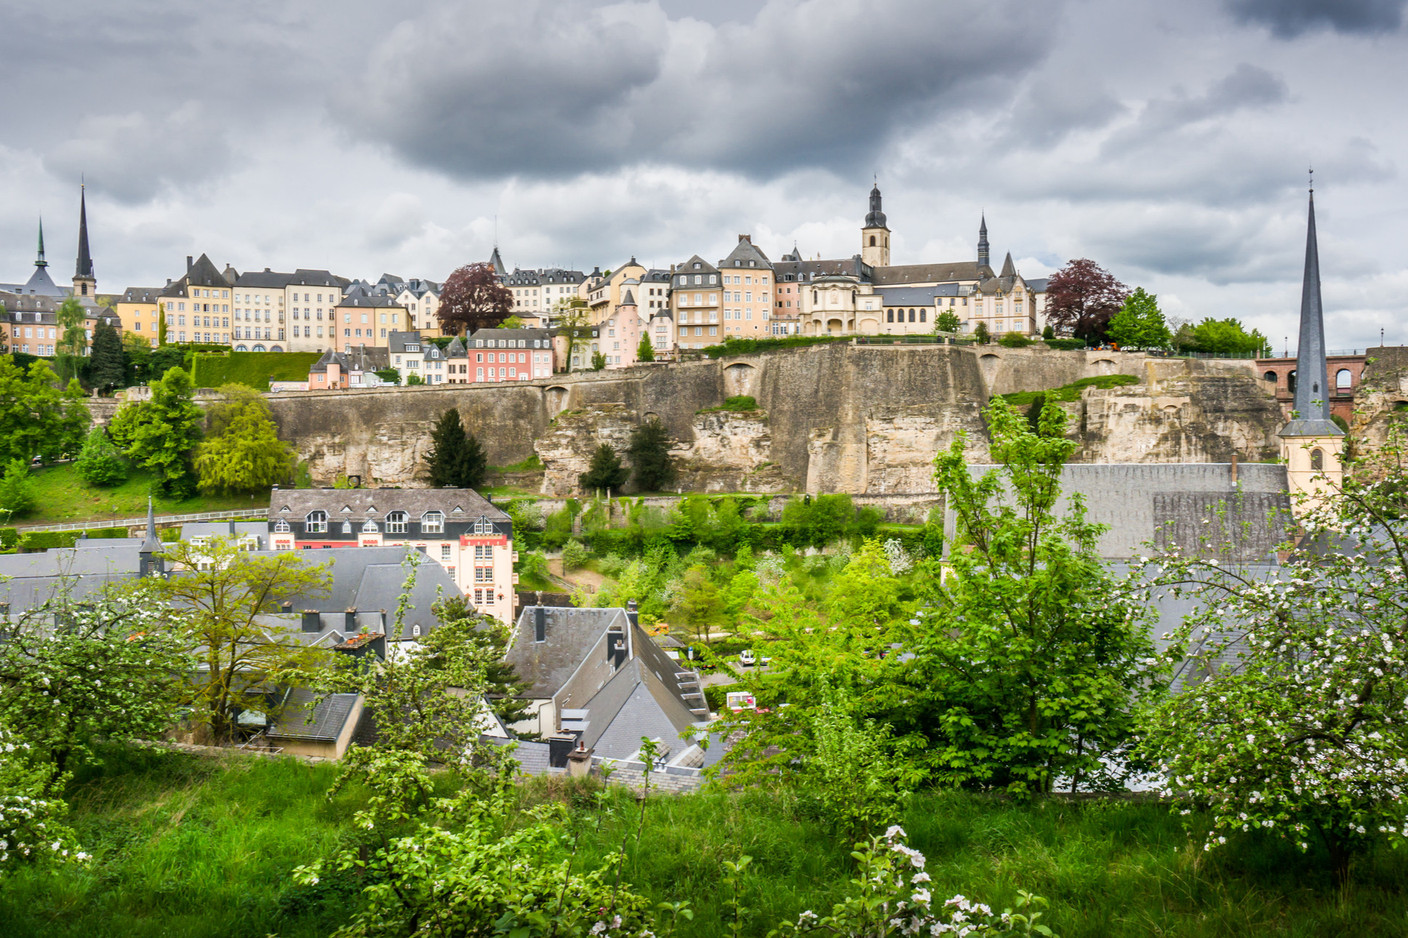 En quelques minutes en transports en commun, les clients auront accès au centre-ville de Luxembourg. (Photo: Shutterstock)